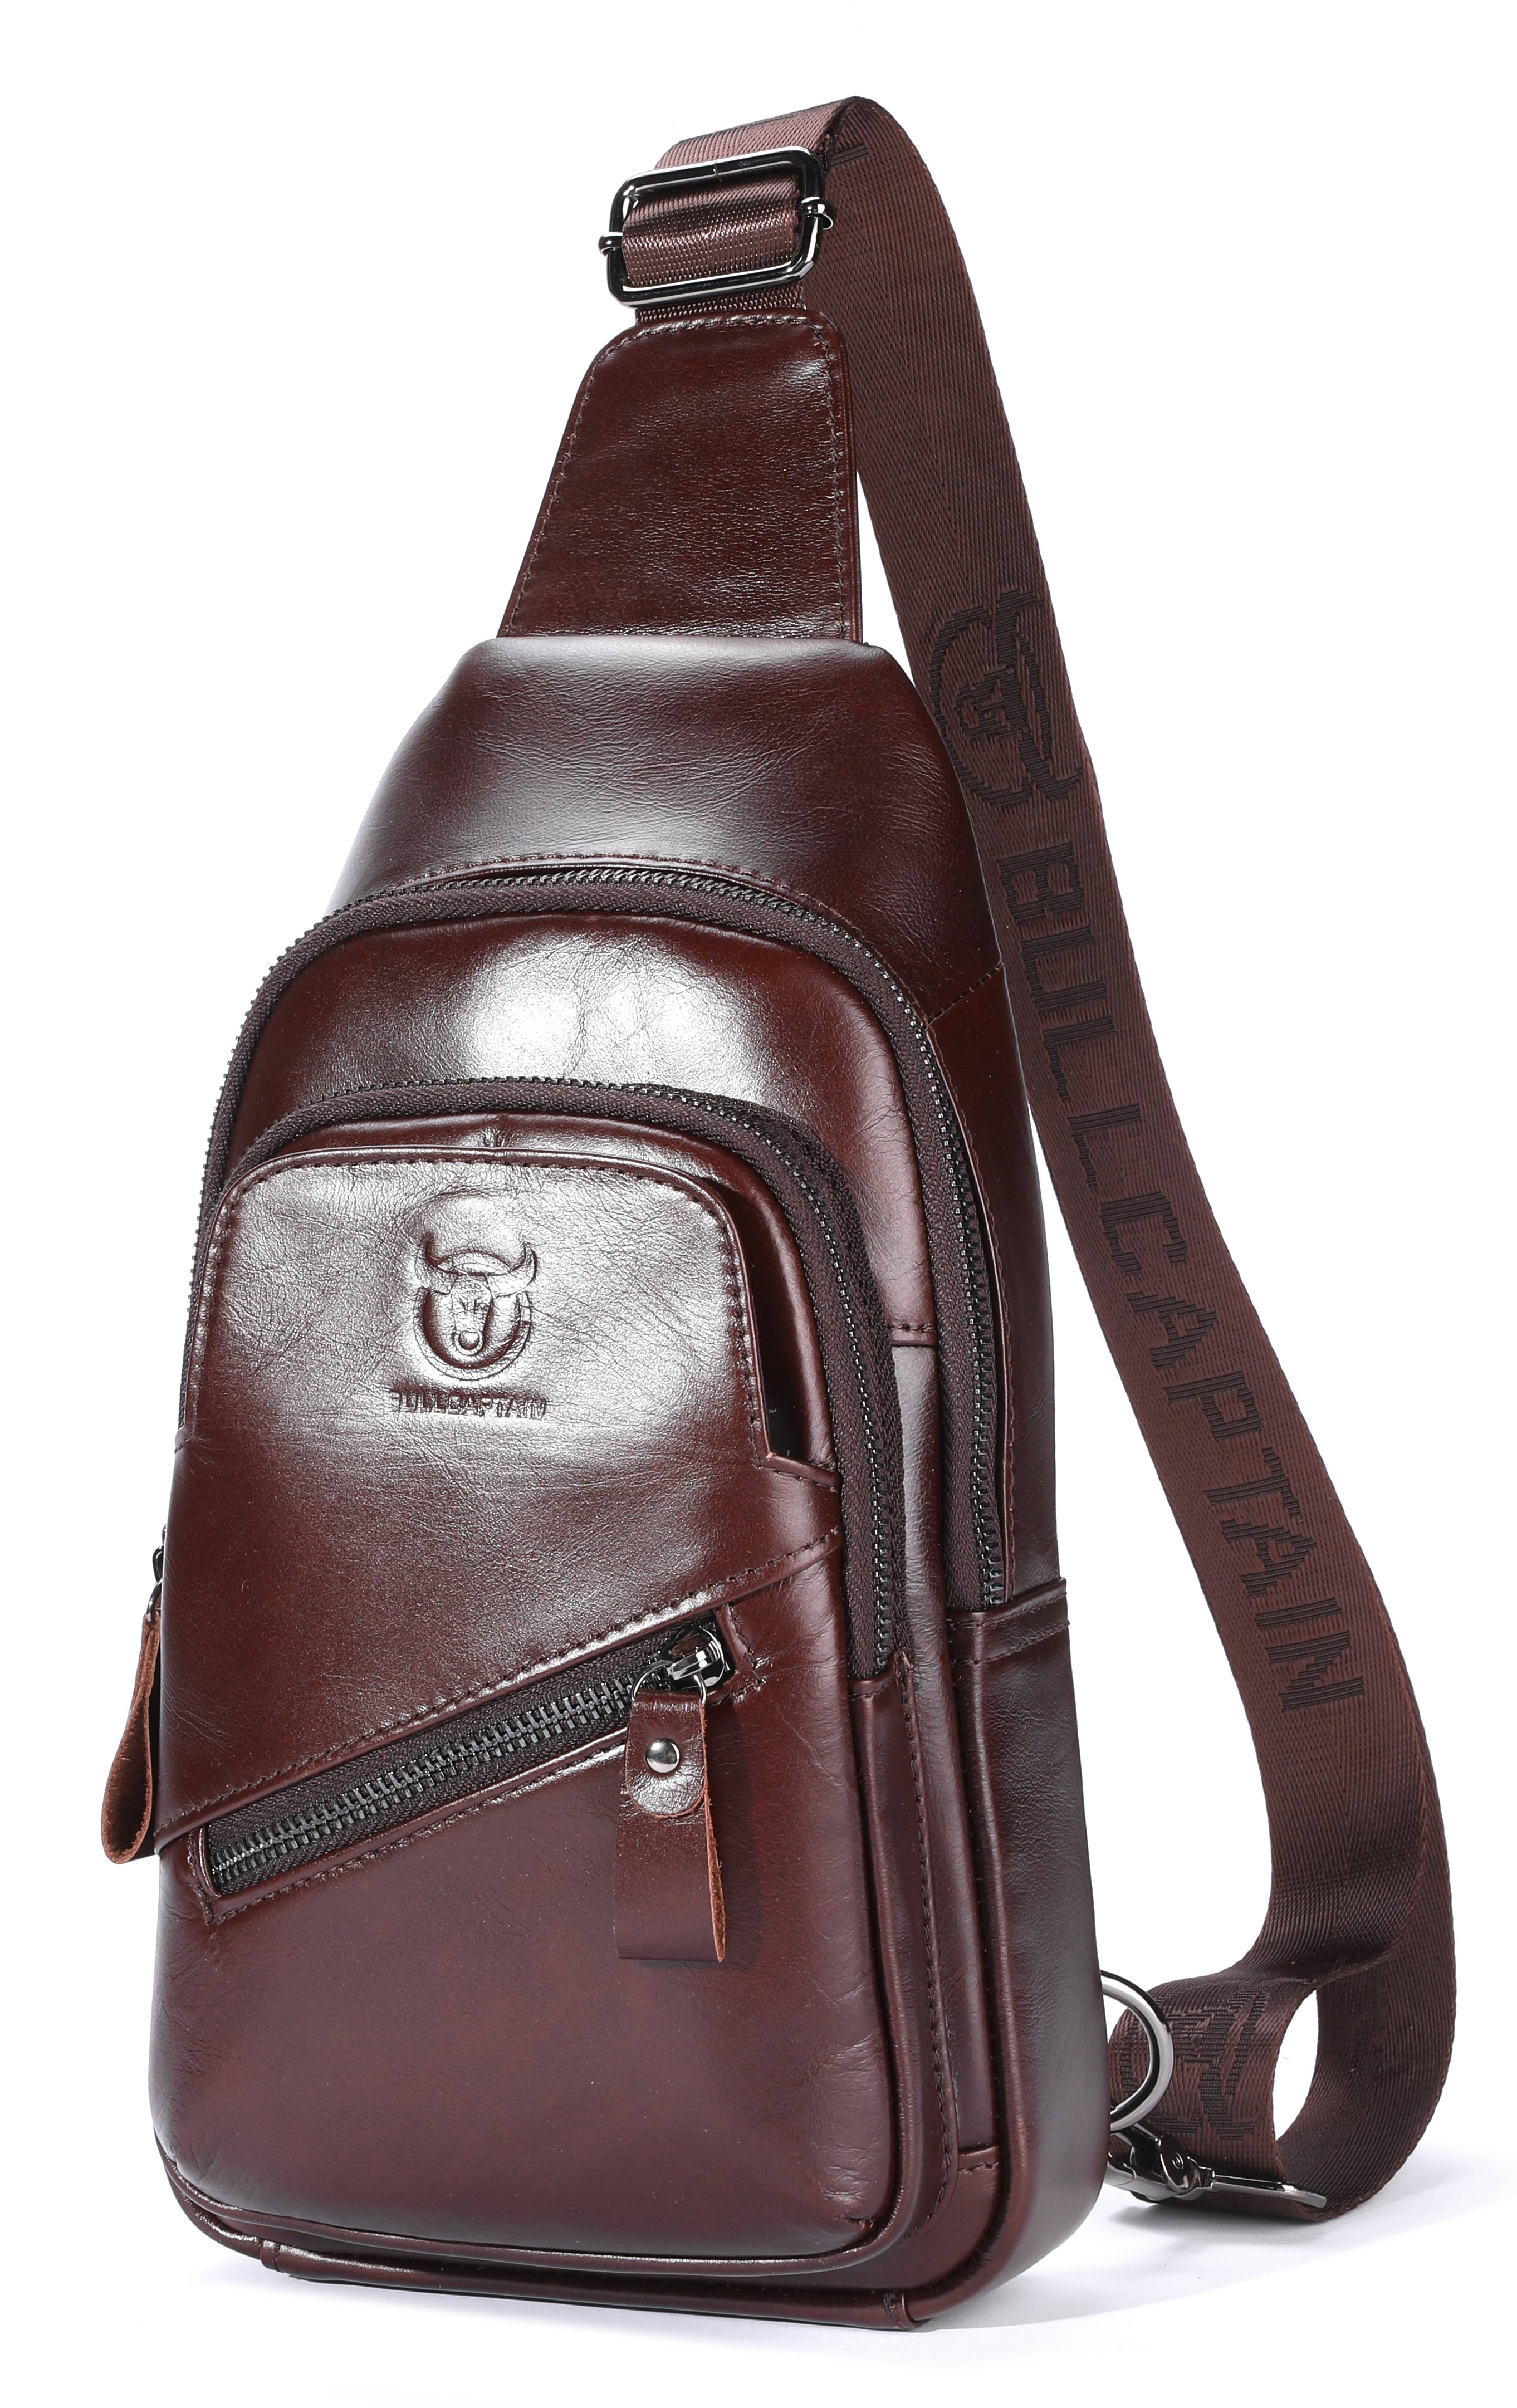 Bullcaptain Leather Crossbody Bag for Men Chest Sling Bag Genuine Leather Sachel Bags - 127